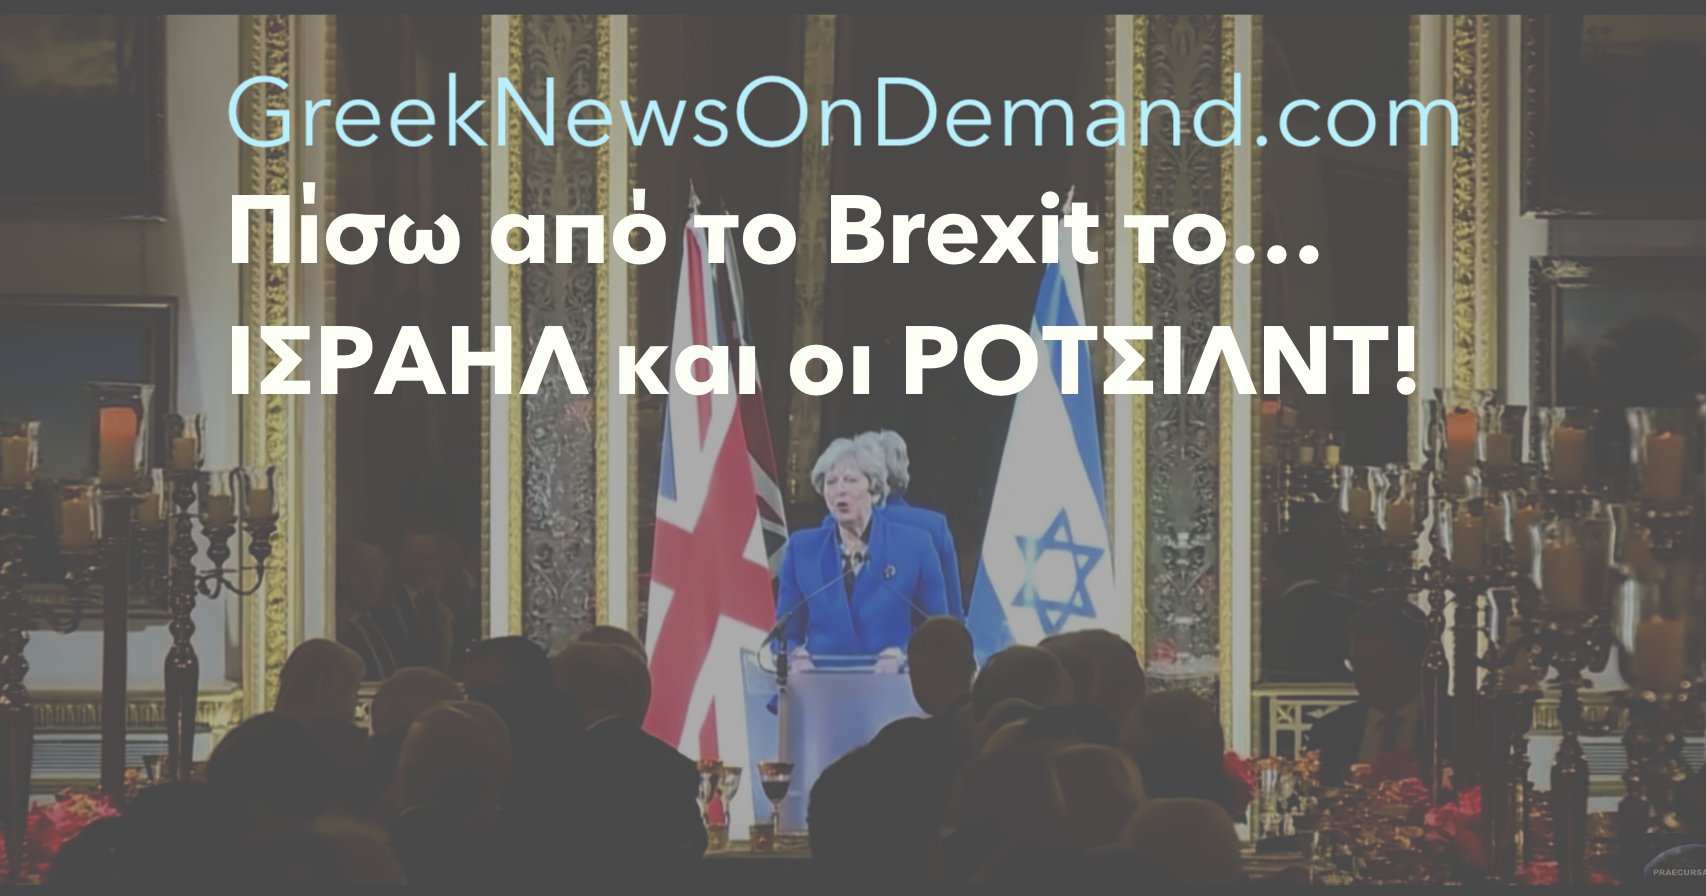 Σοκ: Πίσω από το #Brexit το…ΙΣΡΑΗΛ και οι ΡΟΤΣΙΛΝΤ! Αυξάνονται κατά 75% οι εξαγωγές του Ηνωμένου Βασιλείου προς το Ισραήλ!